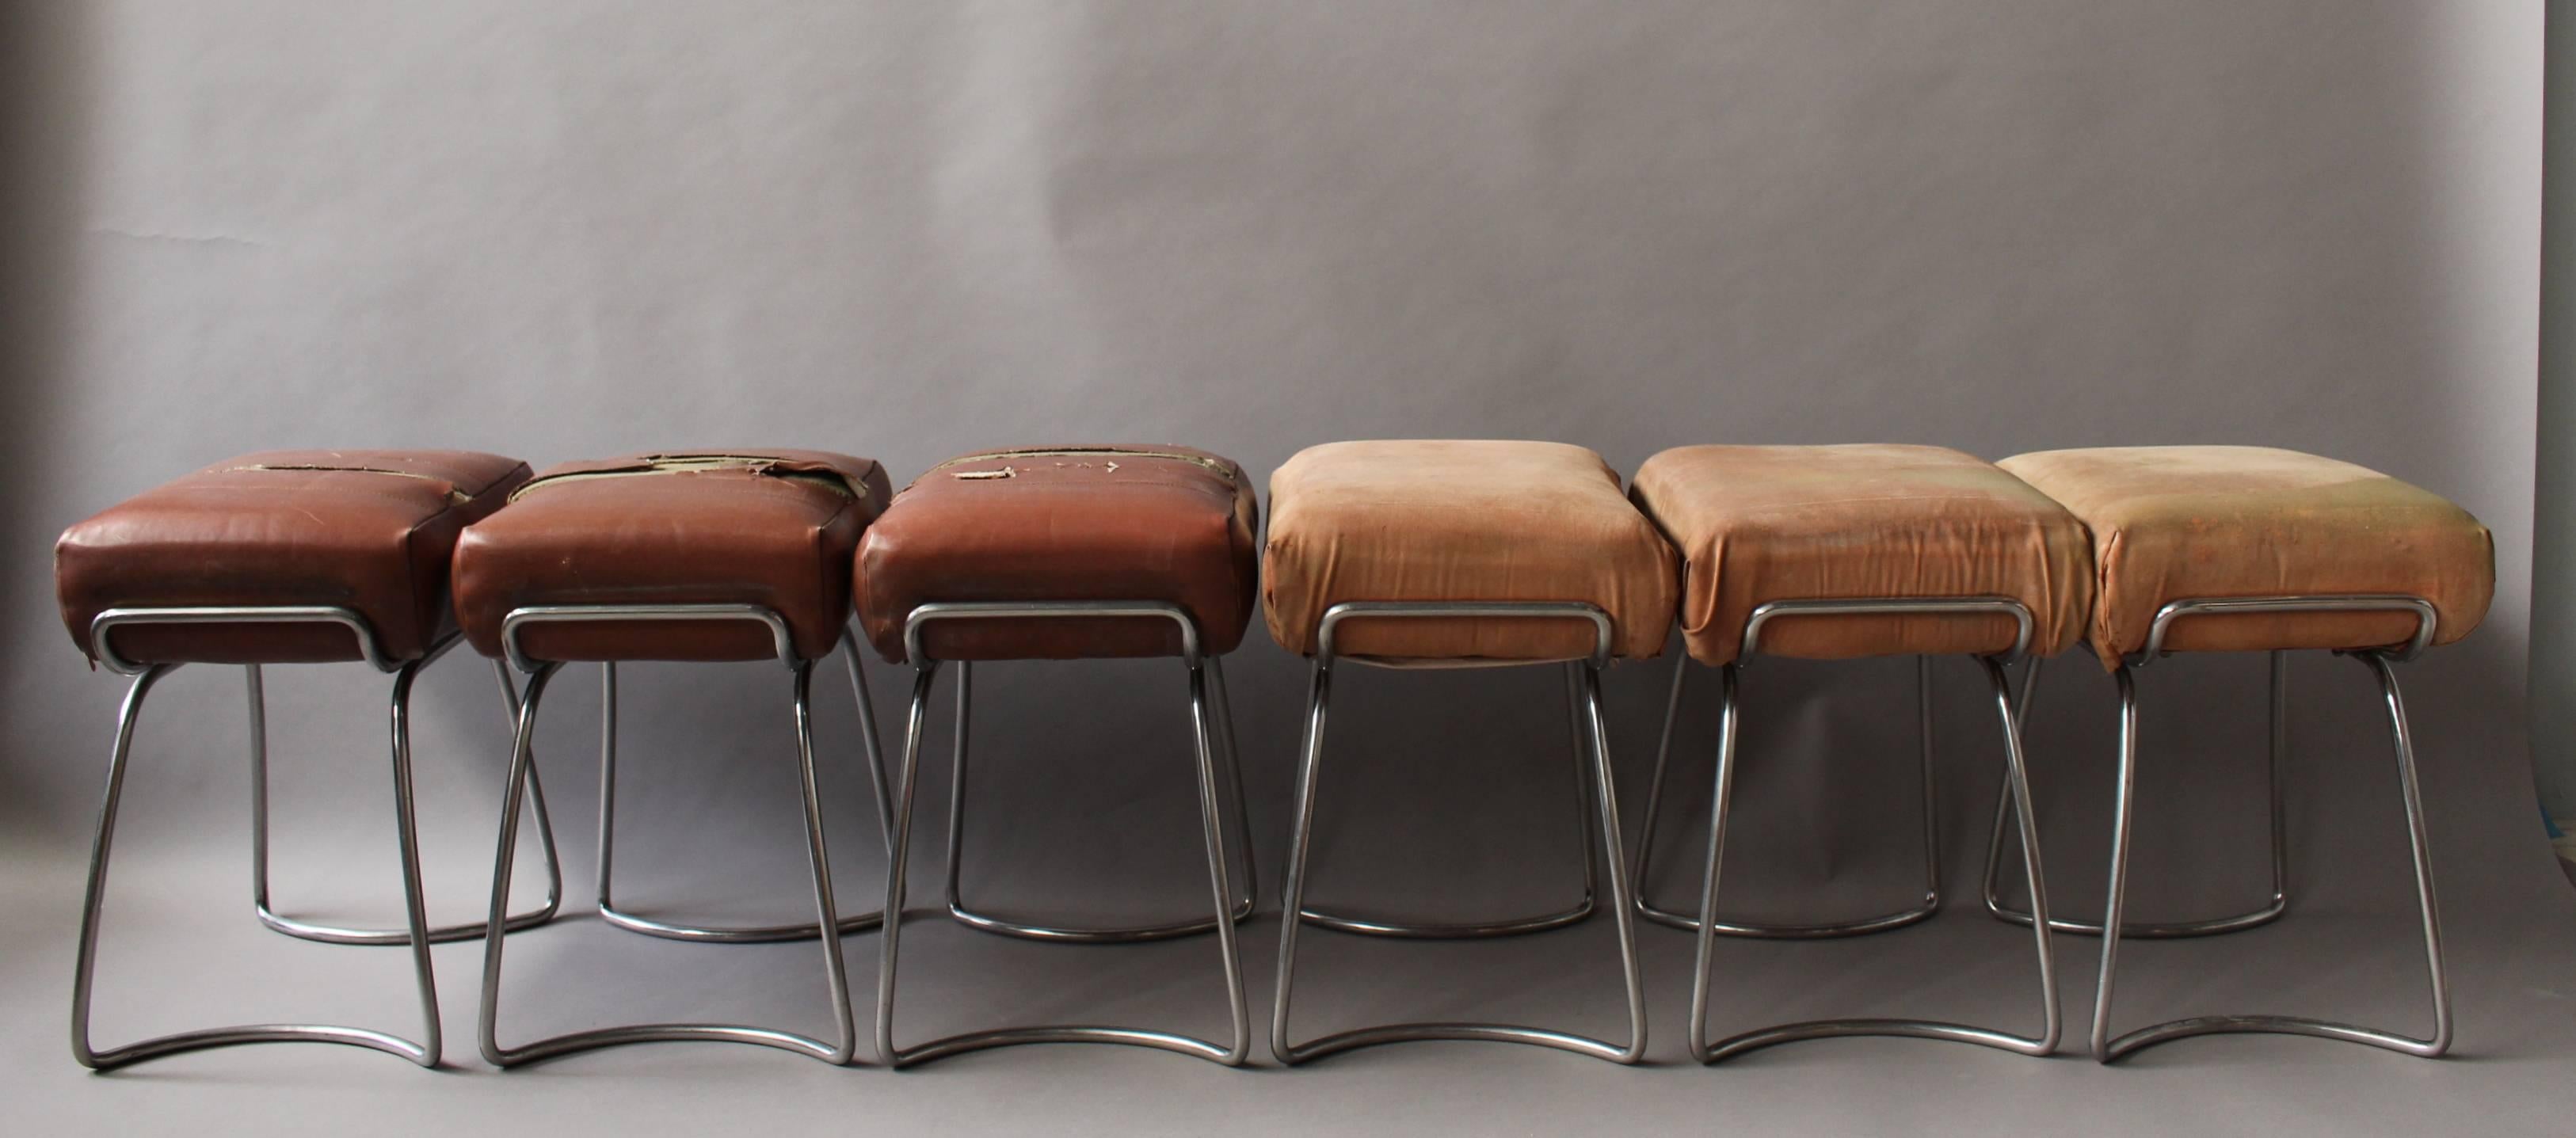 A set of 6 French 1940s tubular chromed base stools.